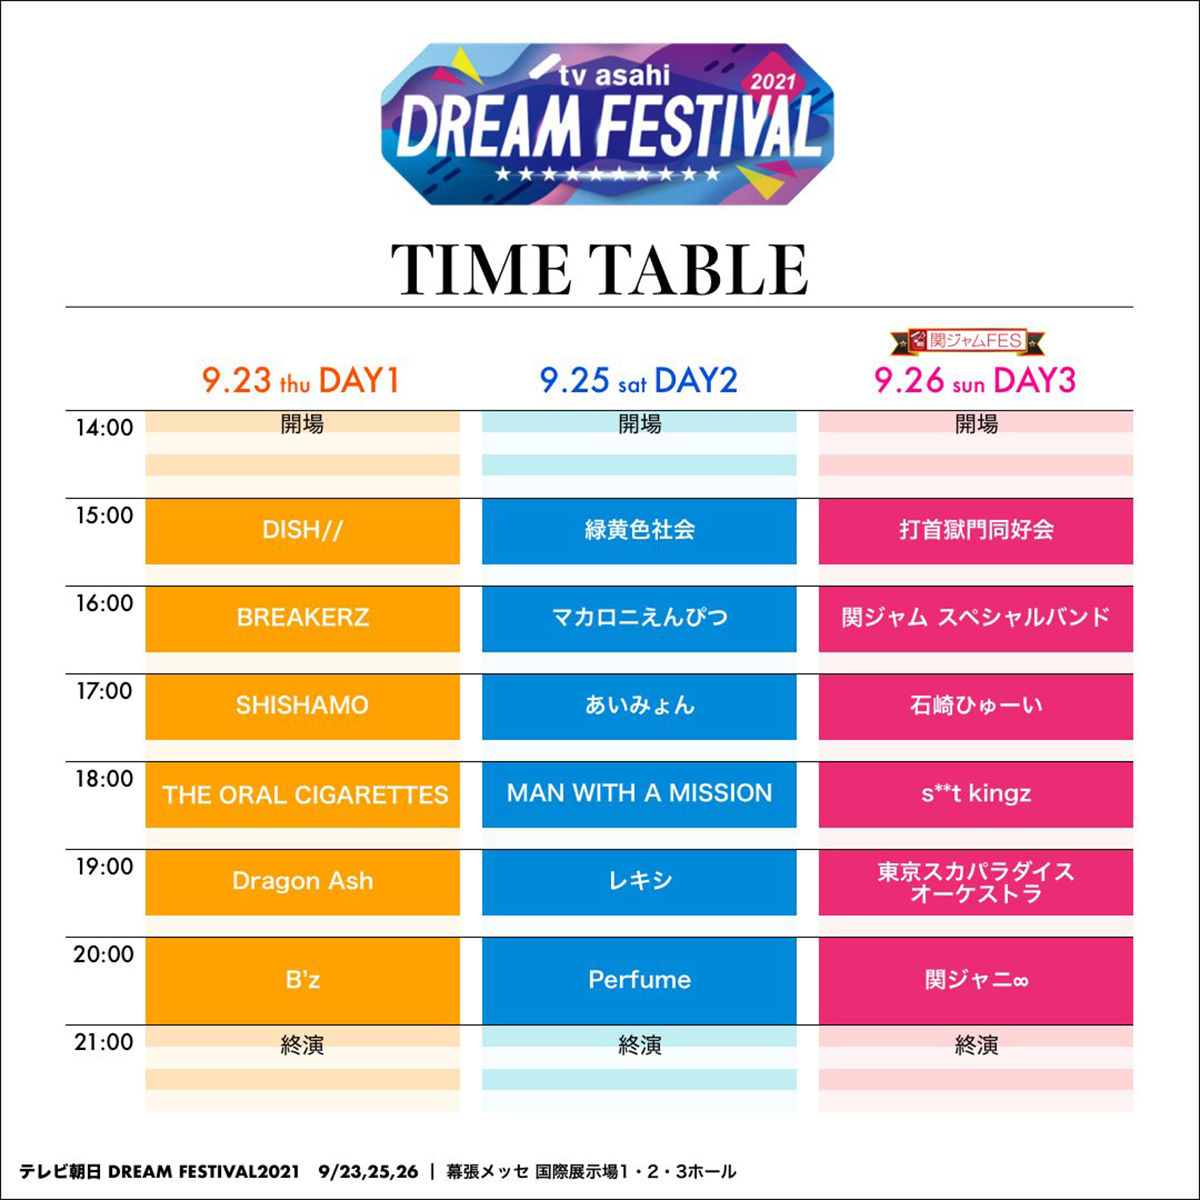 B'zが出演する『テレビ朝日ドリームフェスティバル2021』のタイムテーブルの画像